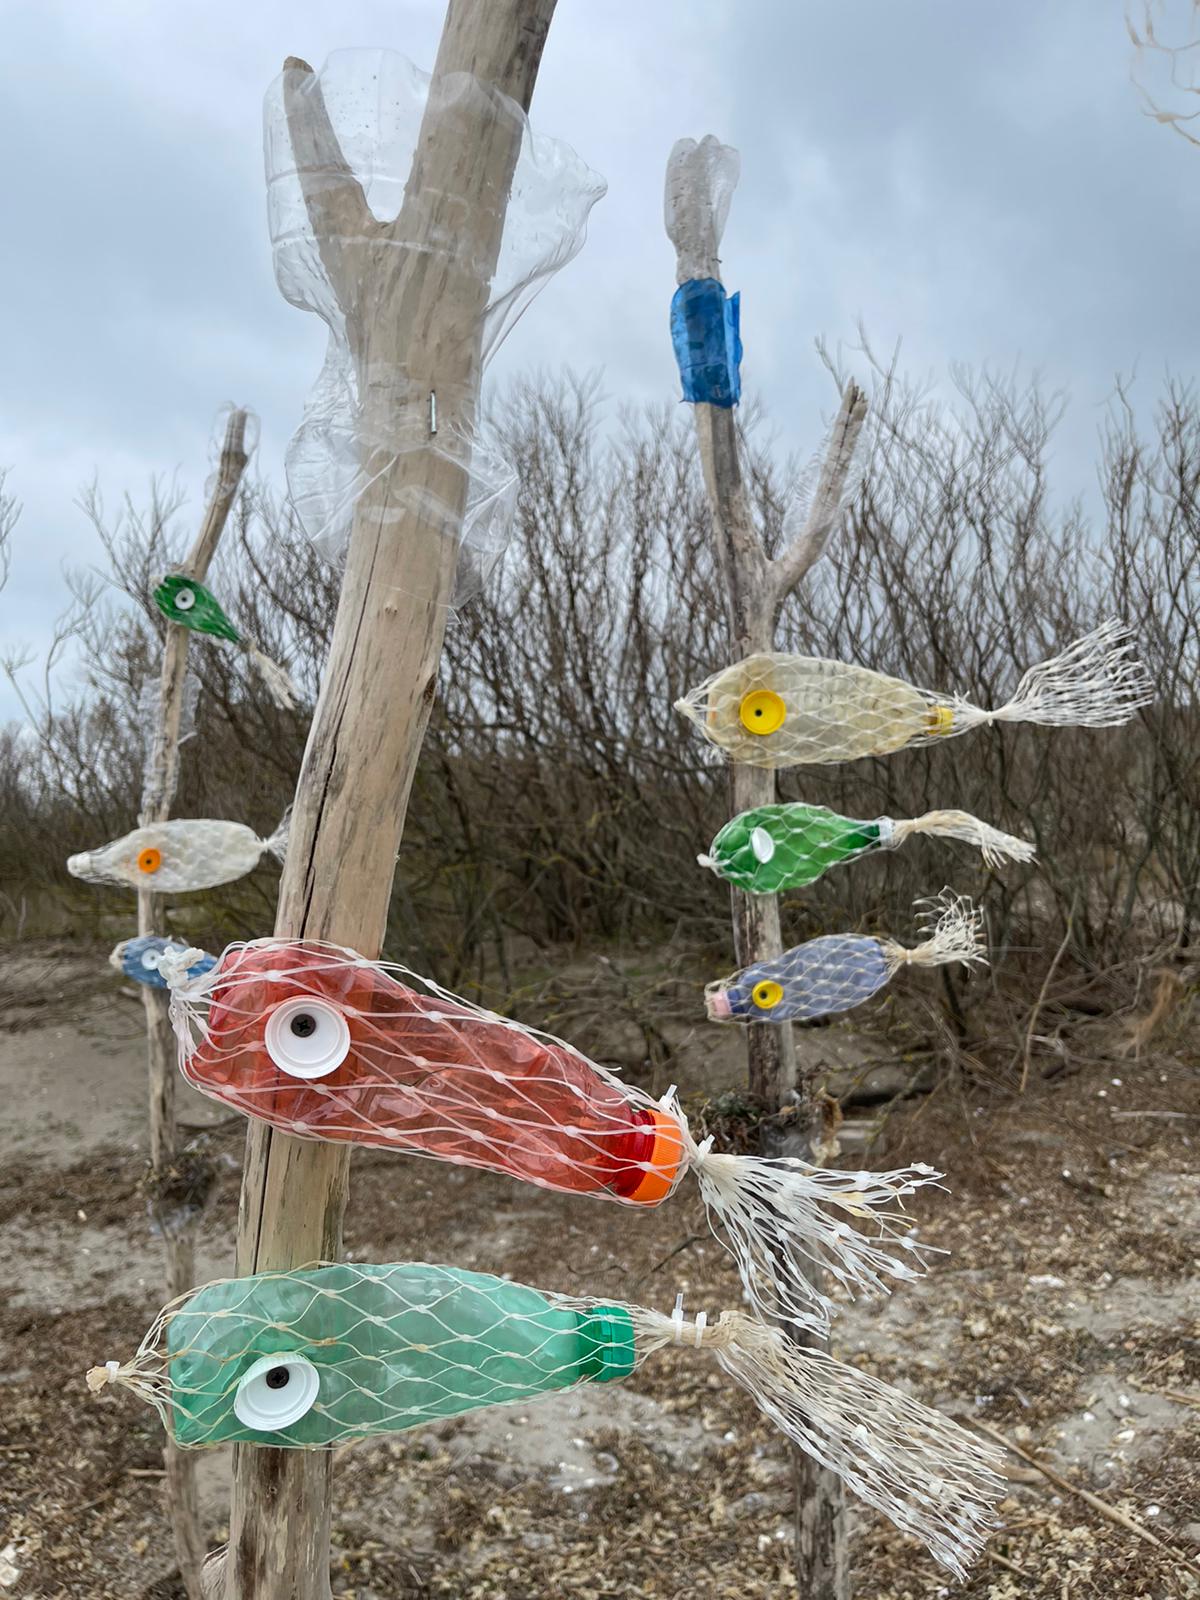 Cleanin’ March 2023: l’evento ecologico che ha riunito comunità, arte e impegno per l’ambiente all’Isola di Sant’Andrea di Marano Lagunare.